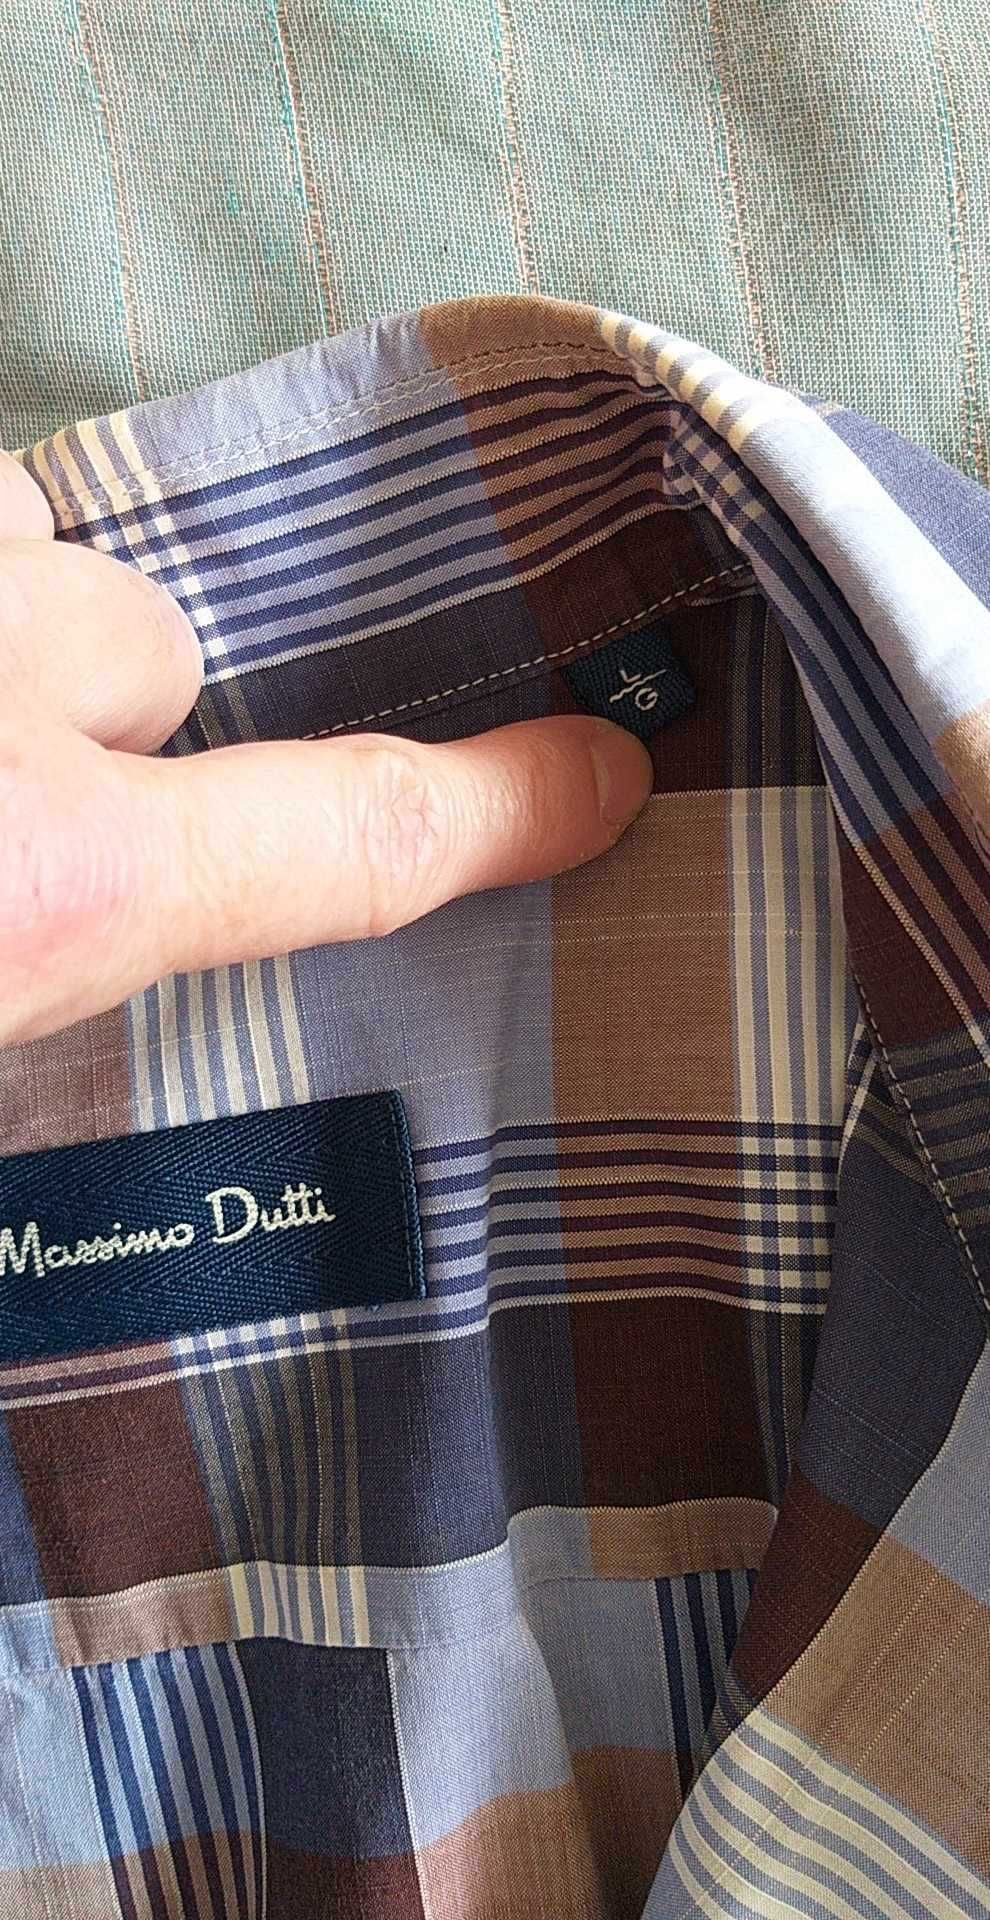 Camisa Sacoor praticamente nova!!! Camisa Massimo Dutti